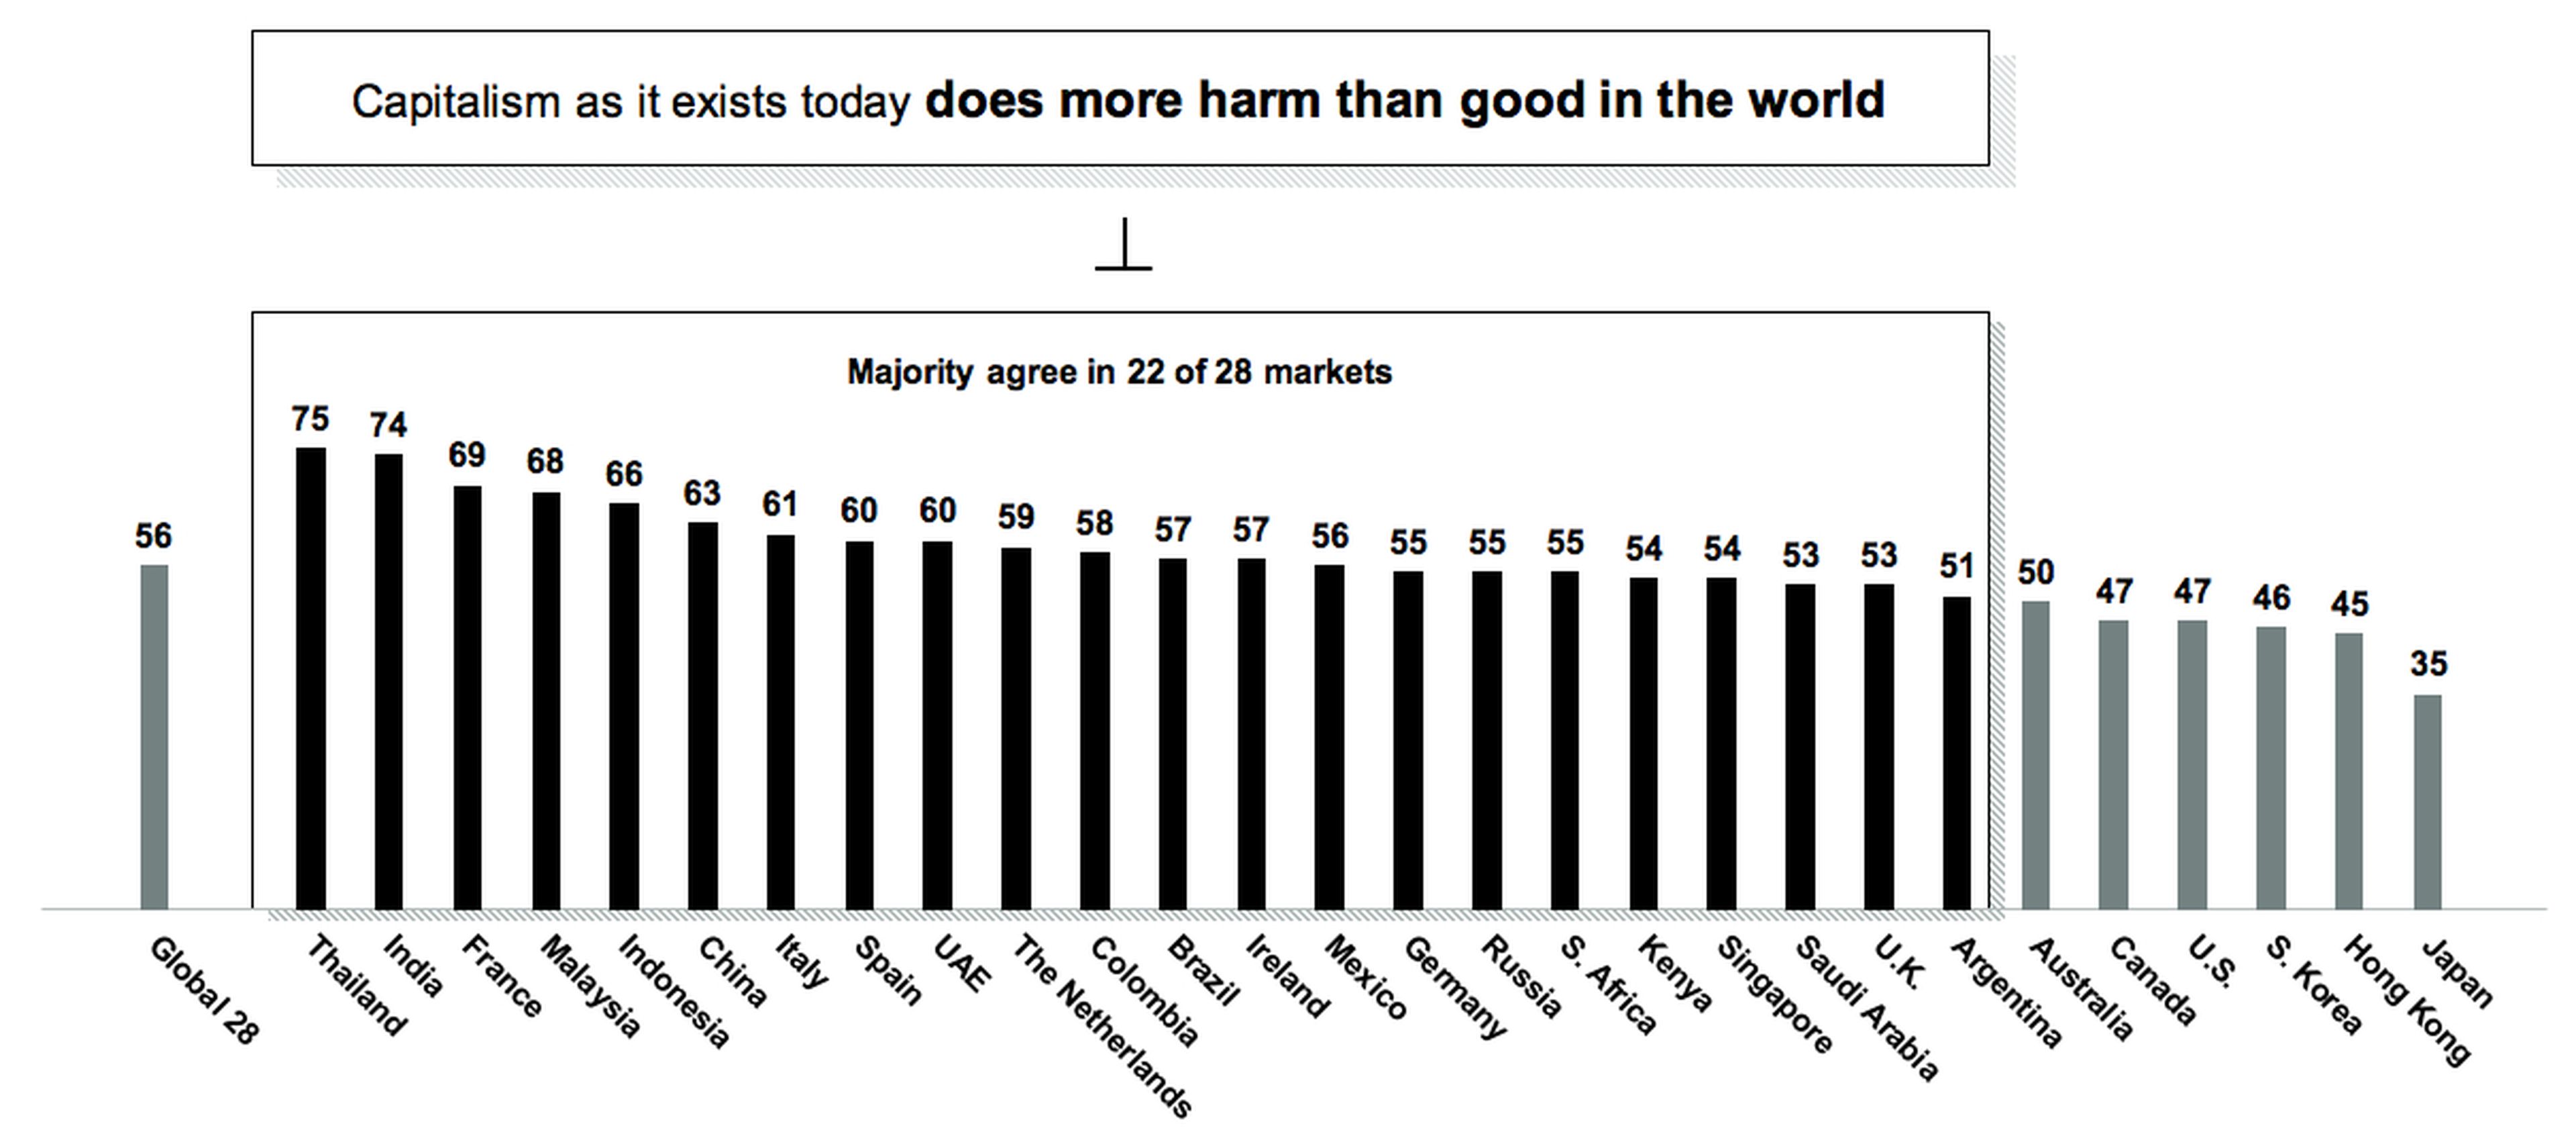 Porcentaje de encuestados por país que consideran que el capitalismo genera más riesgos que beneficios